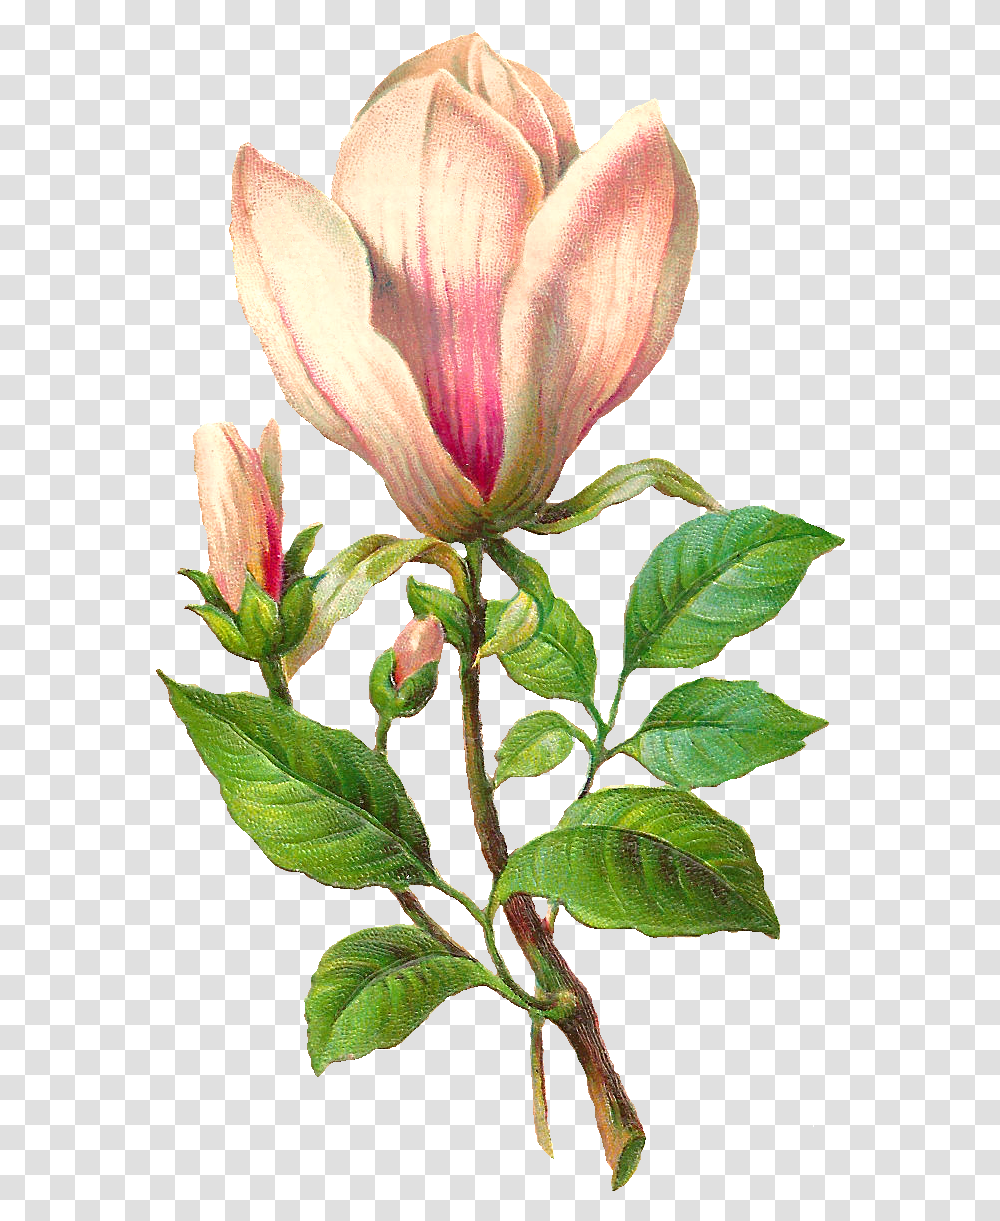 Download Flower Botanical Image Magnolia Flower Botanical Illustration, Plant, Acanthaceae, Petal, Leaf Transparent Png